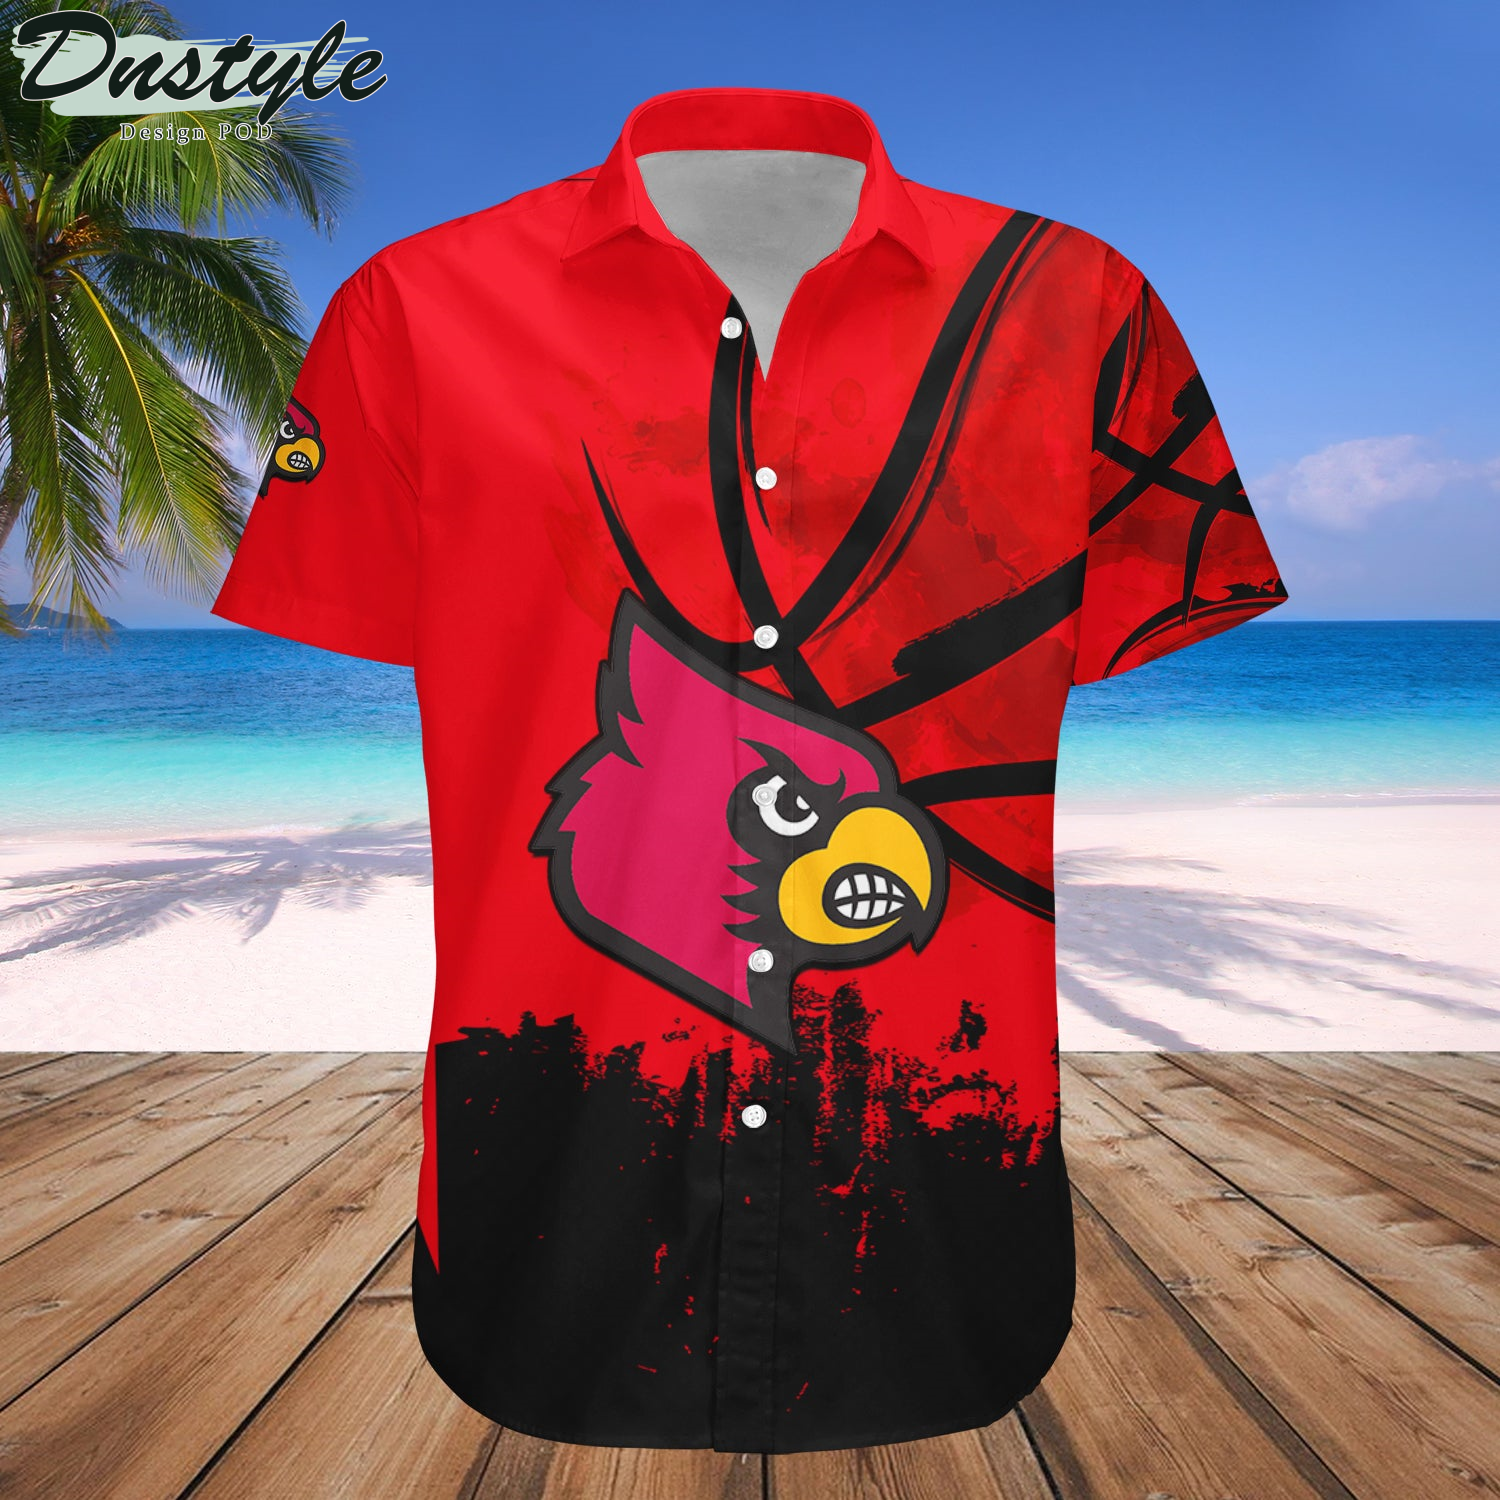 Louisville Cardinals Basketball Net Grunge Pattern Hawaii Shirt